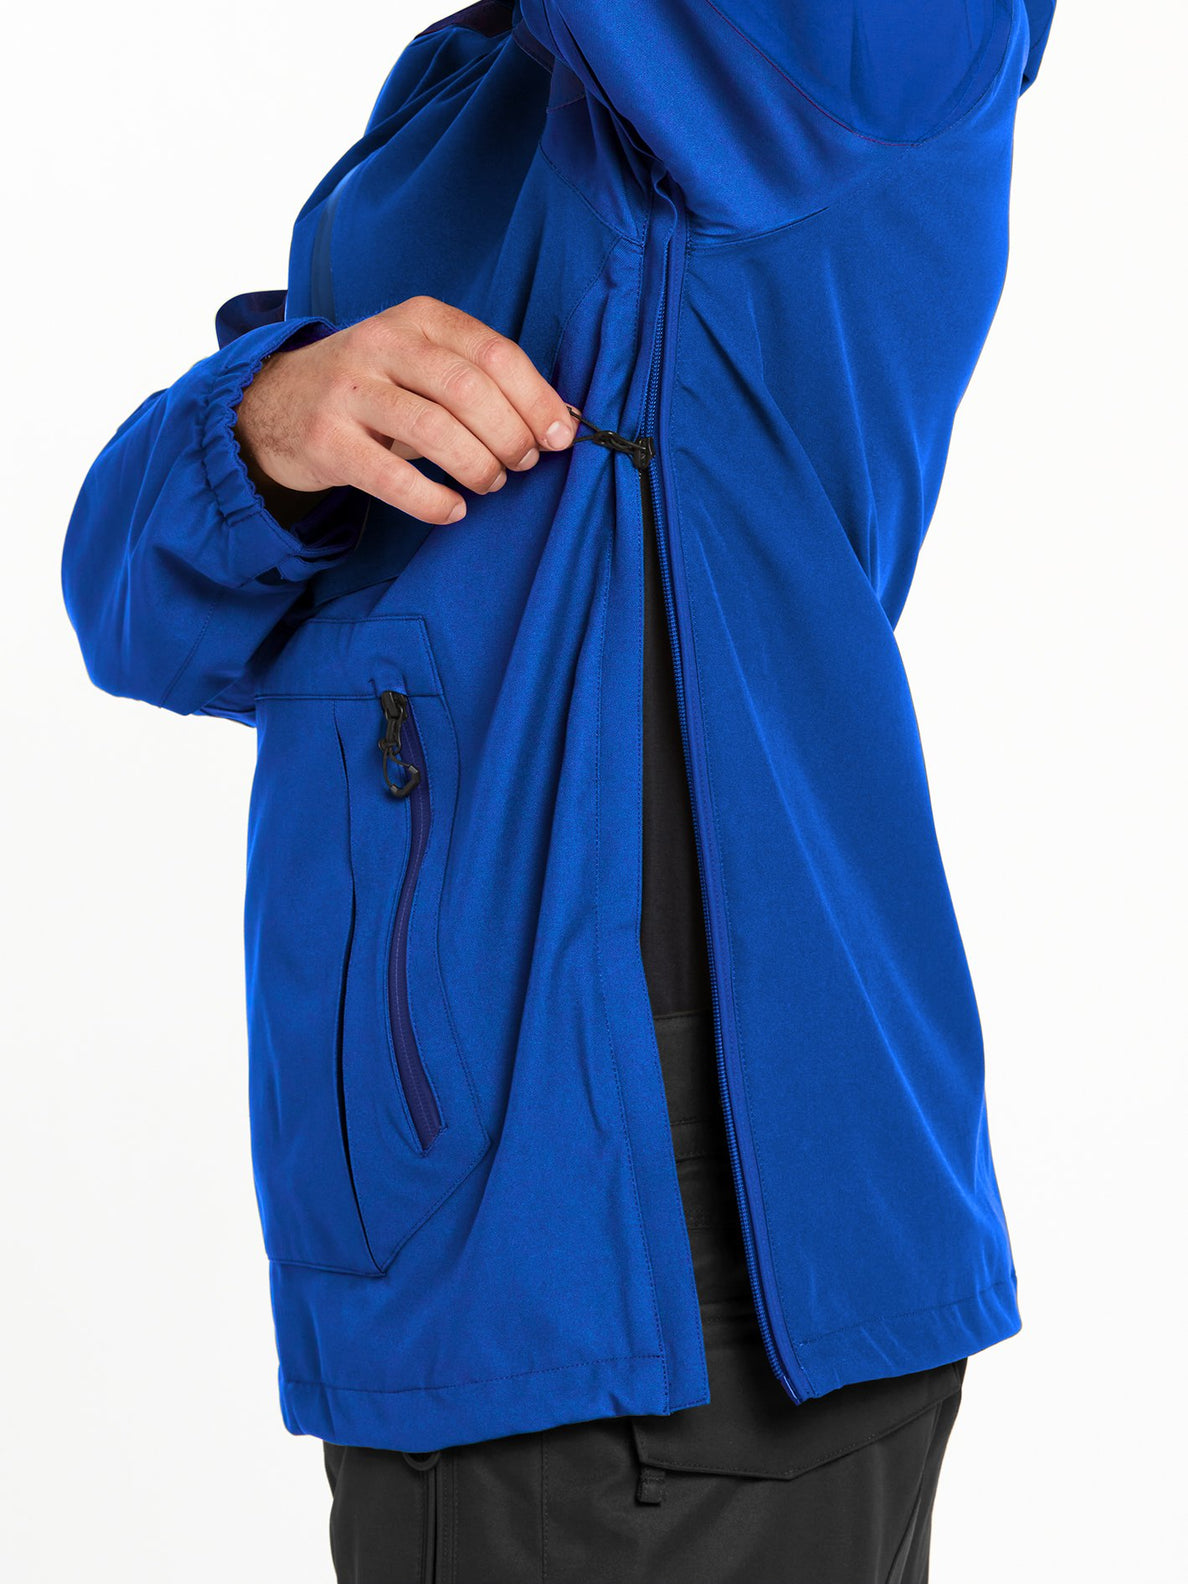 Brighton Pullover Jacket - BRIGHT BLUE (G0652210_BBL) [36]